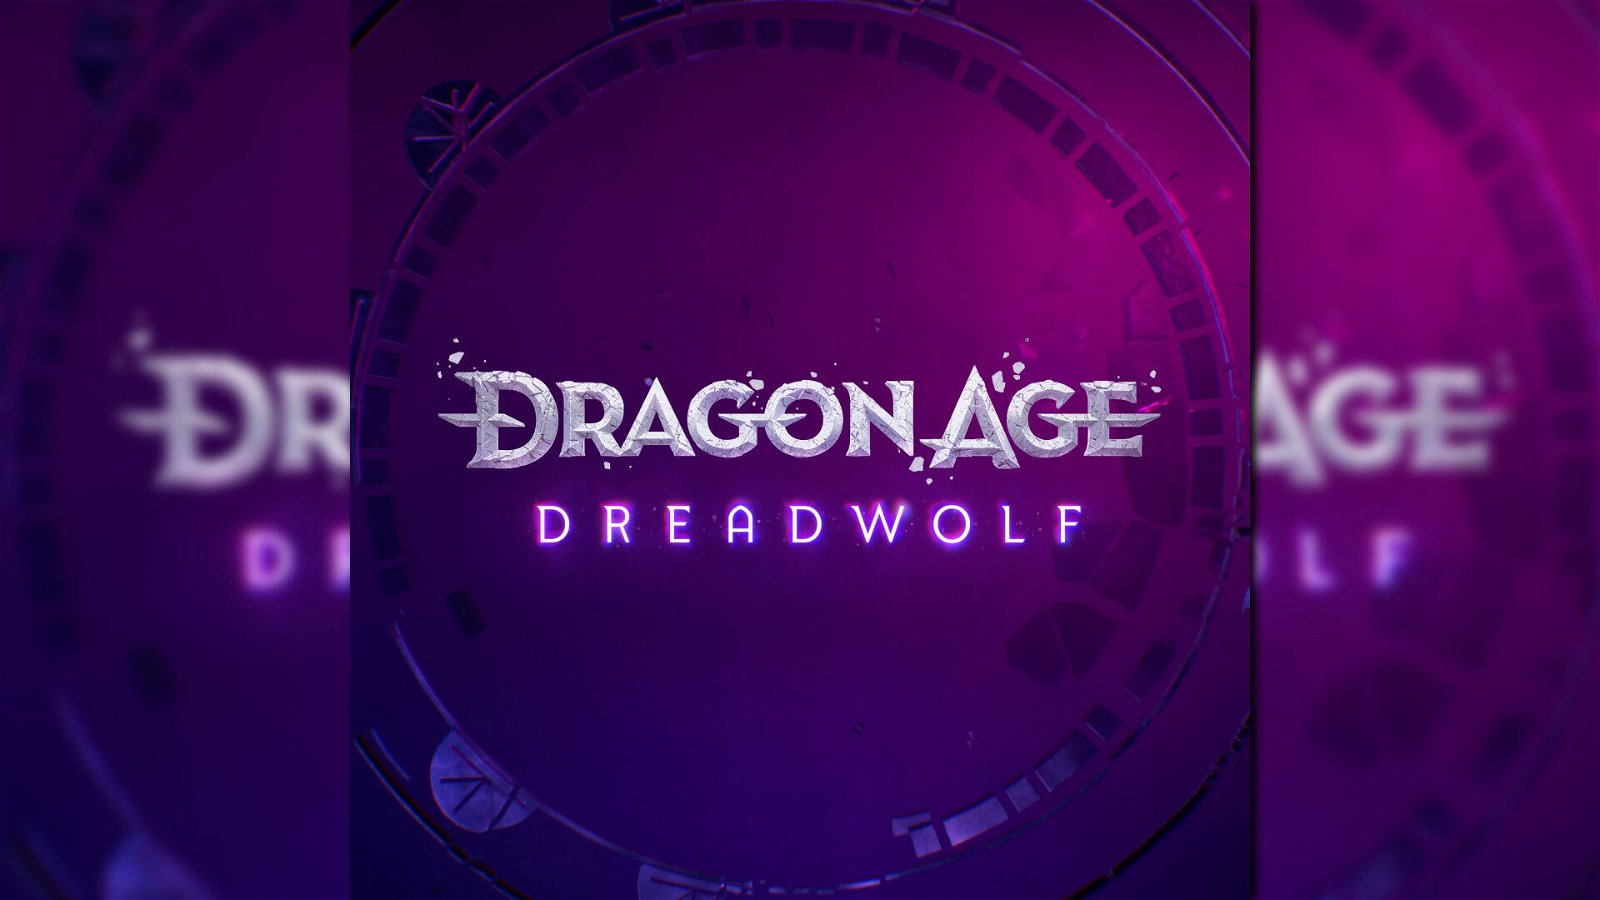 Dragon Age Dreadwolf esiste ed è giocabile, assicura BioWare